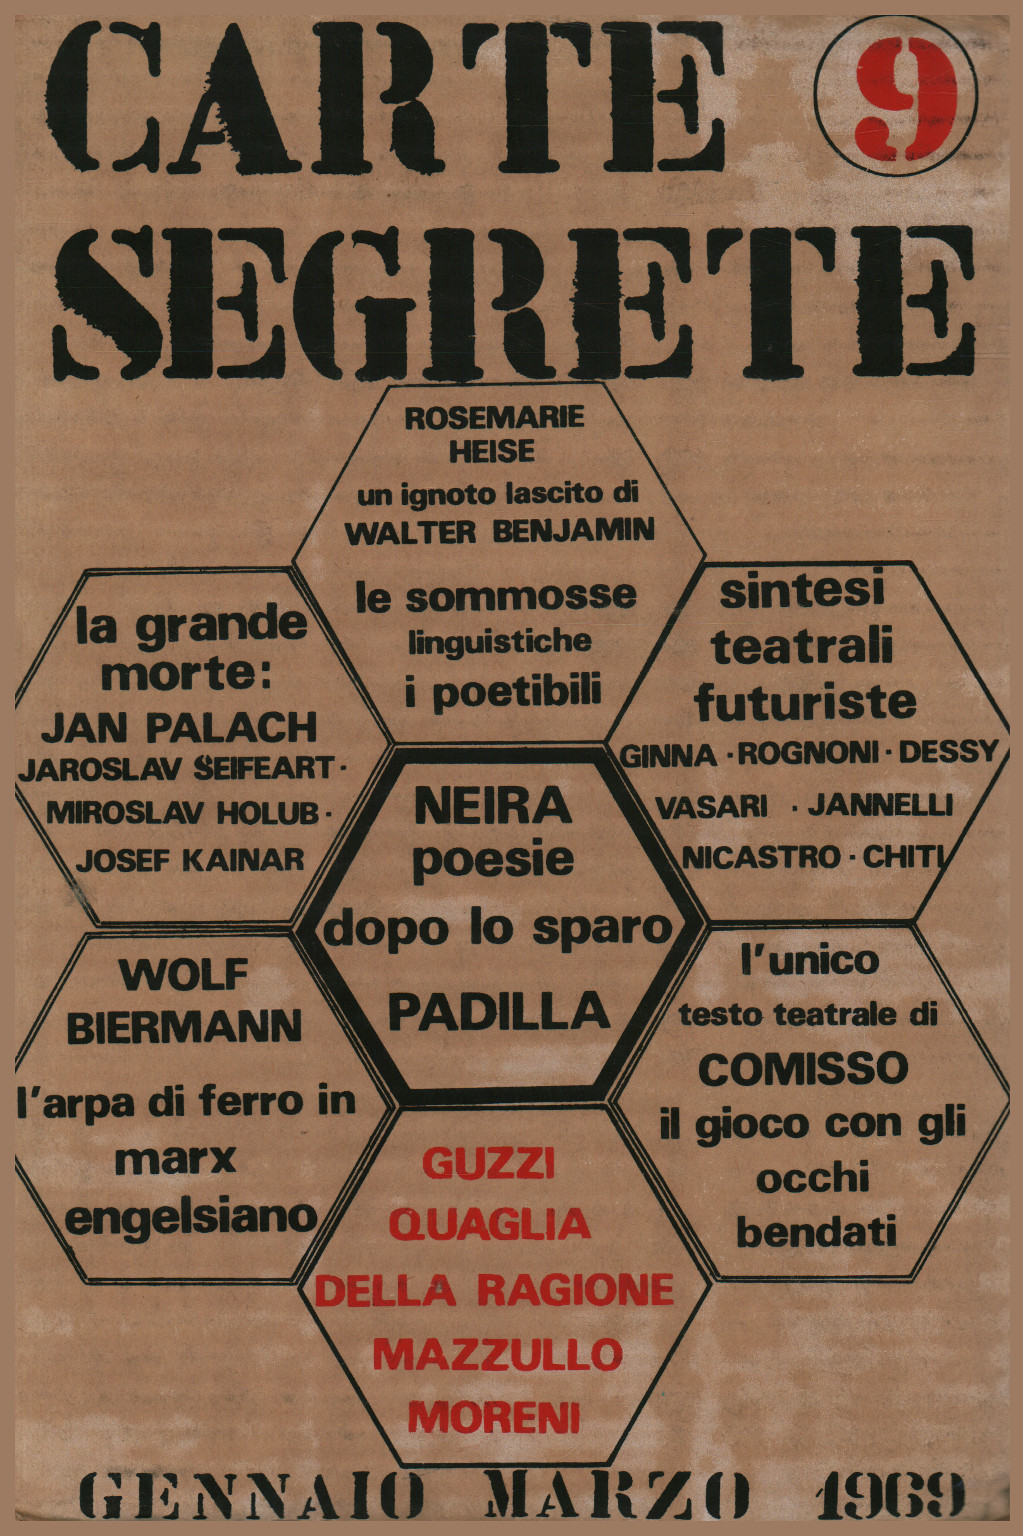 Carte segrete 9, anno III, gennaio-marzo 1969, s.a.